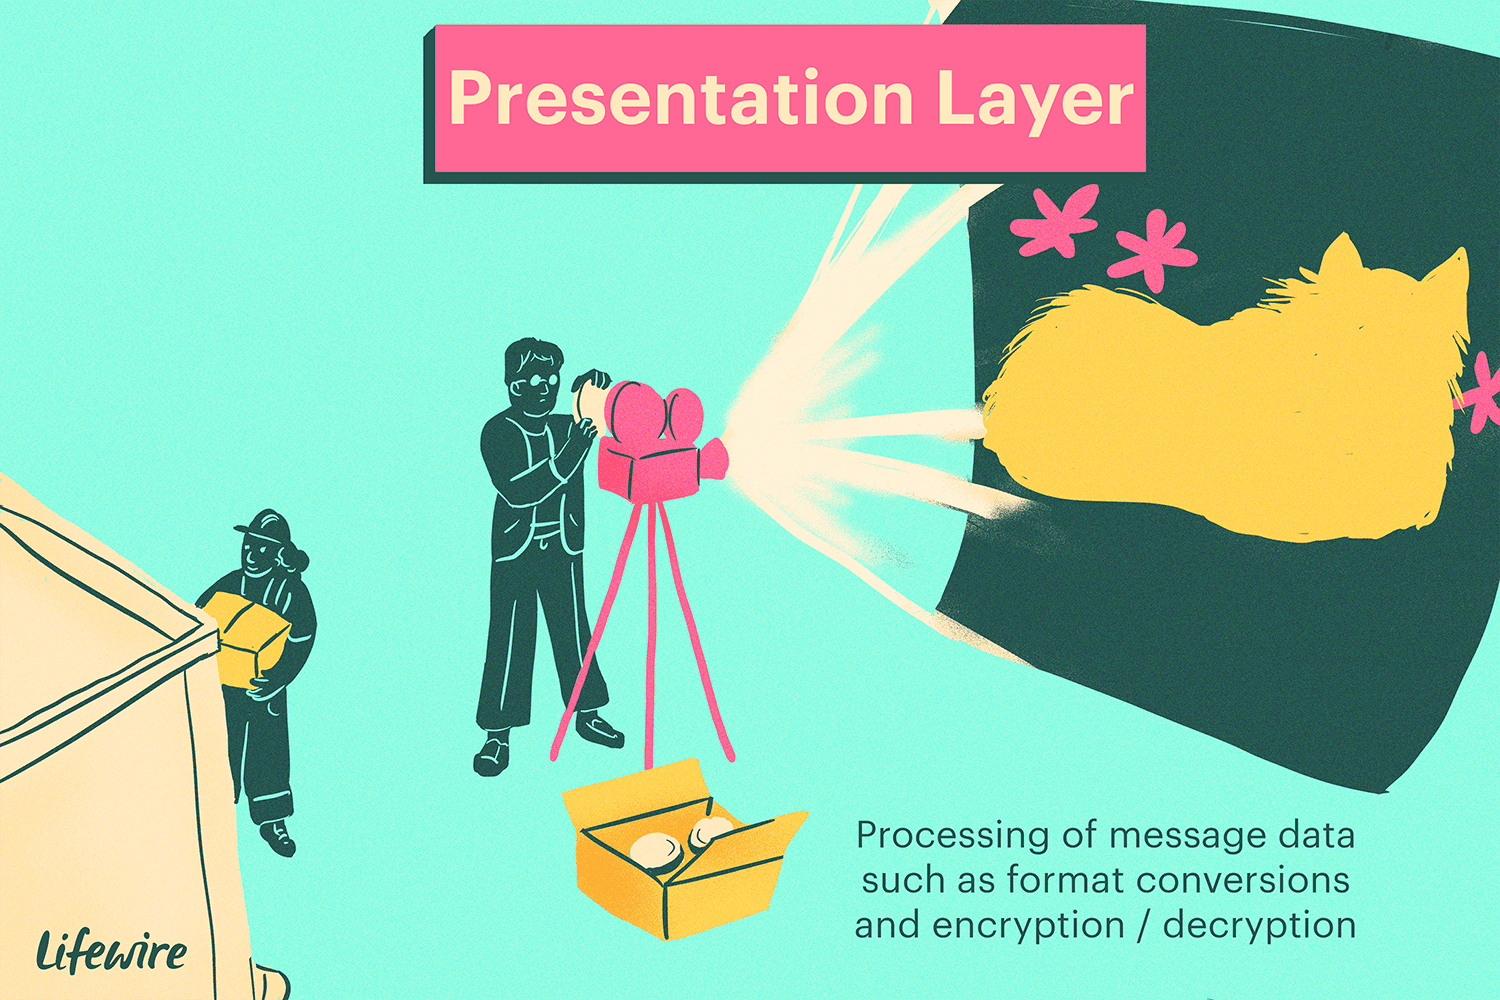 Ilustrace prezentační vrstvy, která vypadá jako filmový projektor